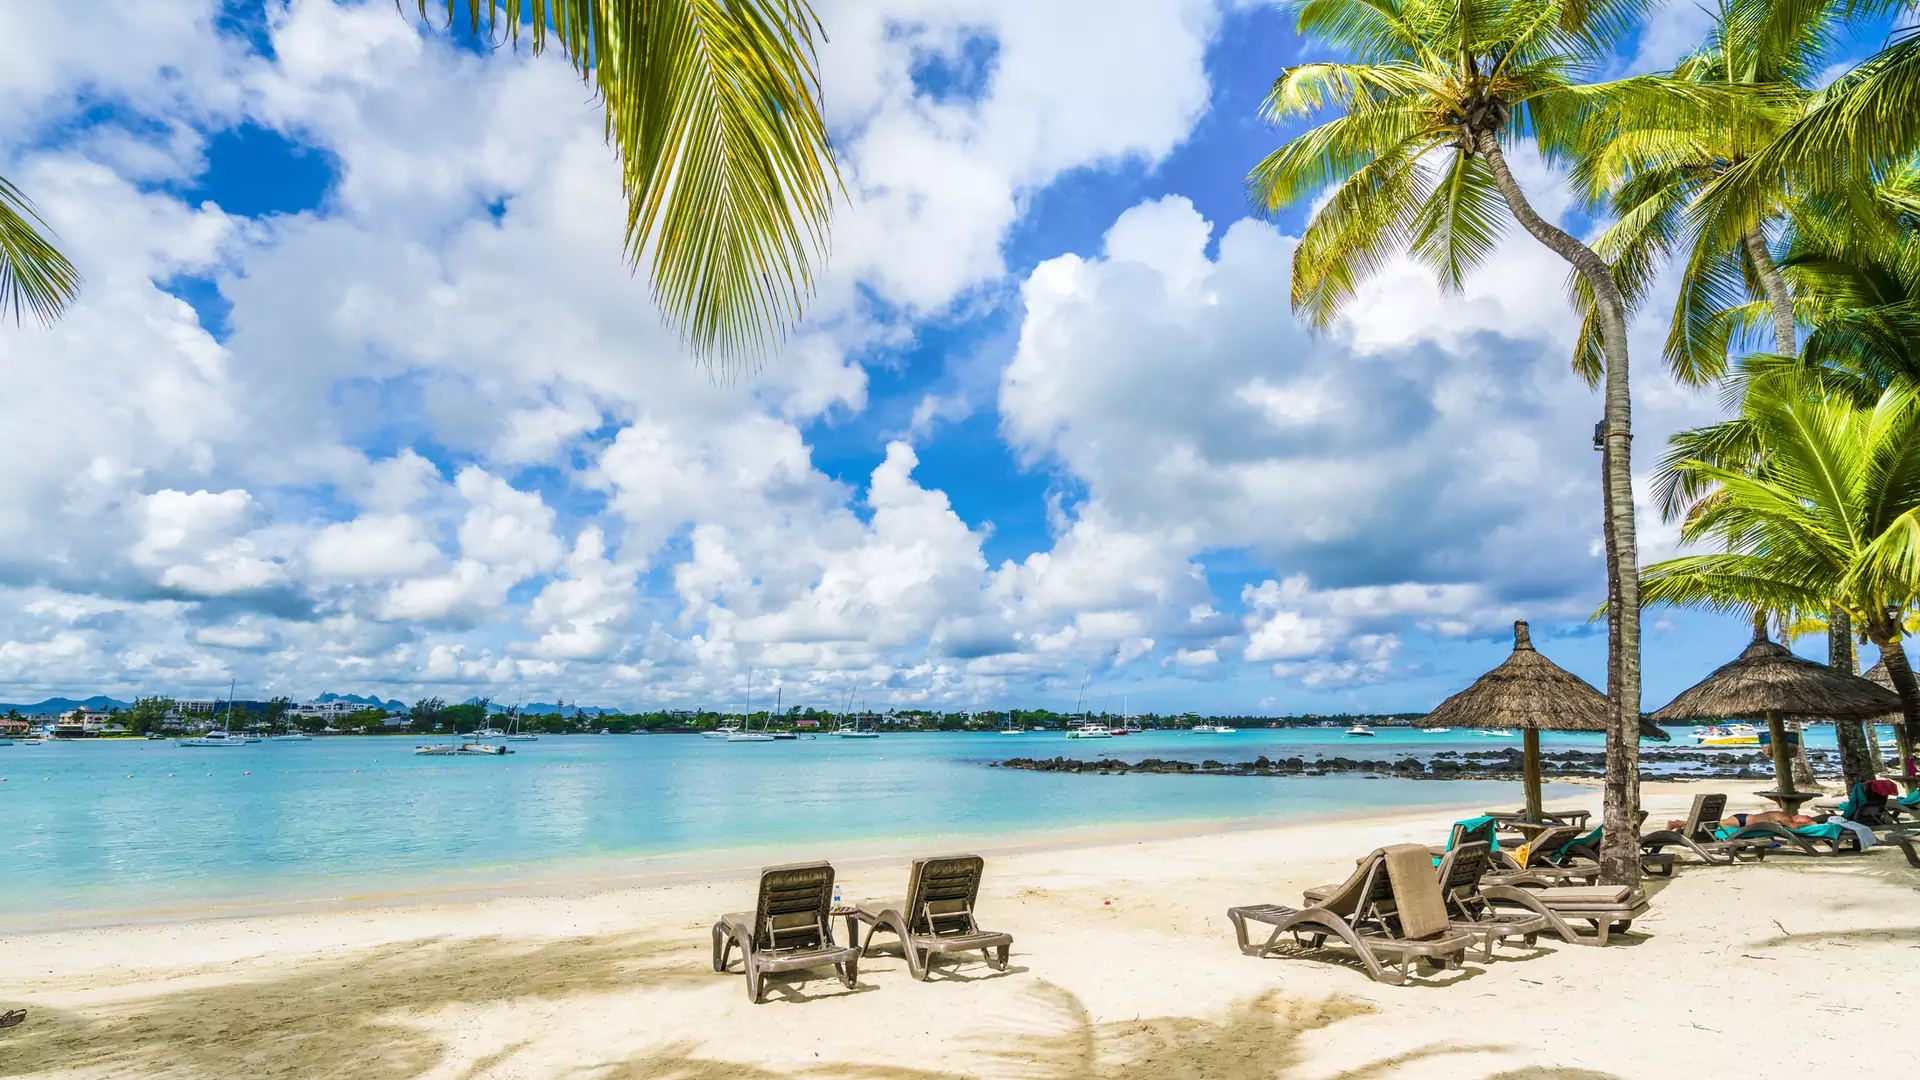 Tam zimowa chandra nie istnieje - odpłyń w rejs po rajskich plażach: Seszele, Mauritius i Madagaskar w okazyjnej cenie